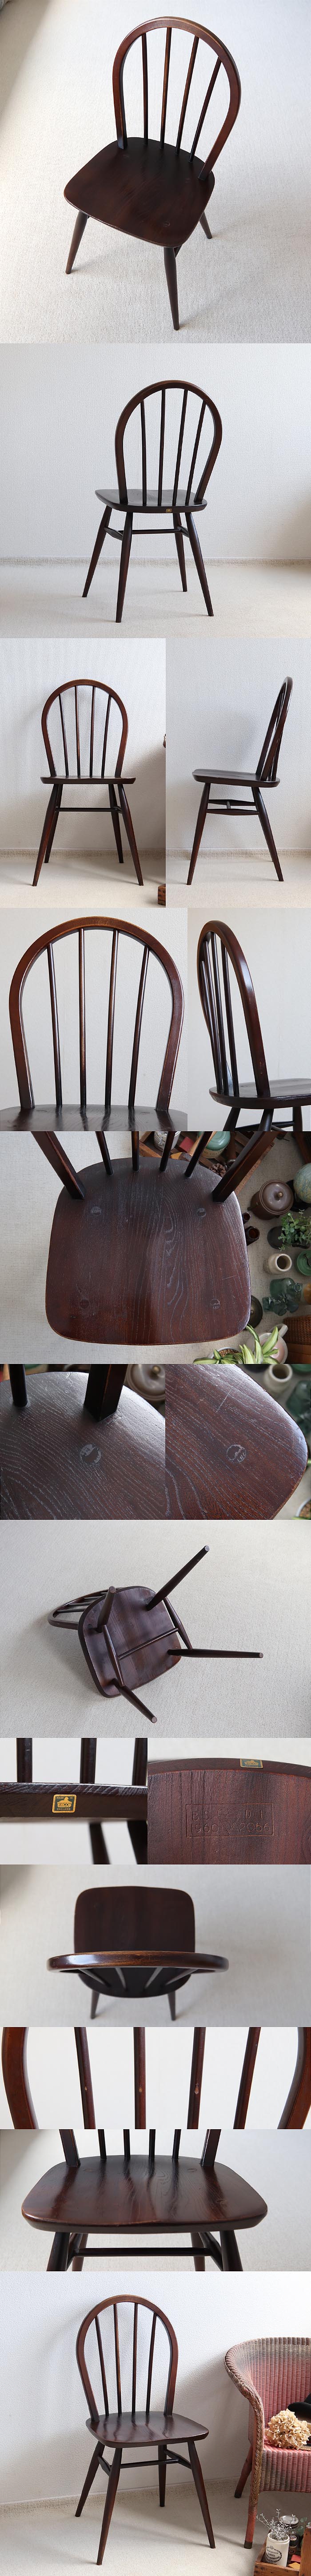 イギリス アンティーク アーコールチェア ercol 木製椅子 ウィンザーチェア 家具「フープバック」T-827